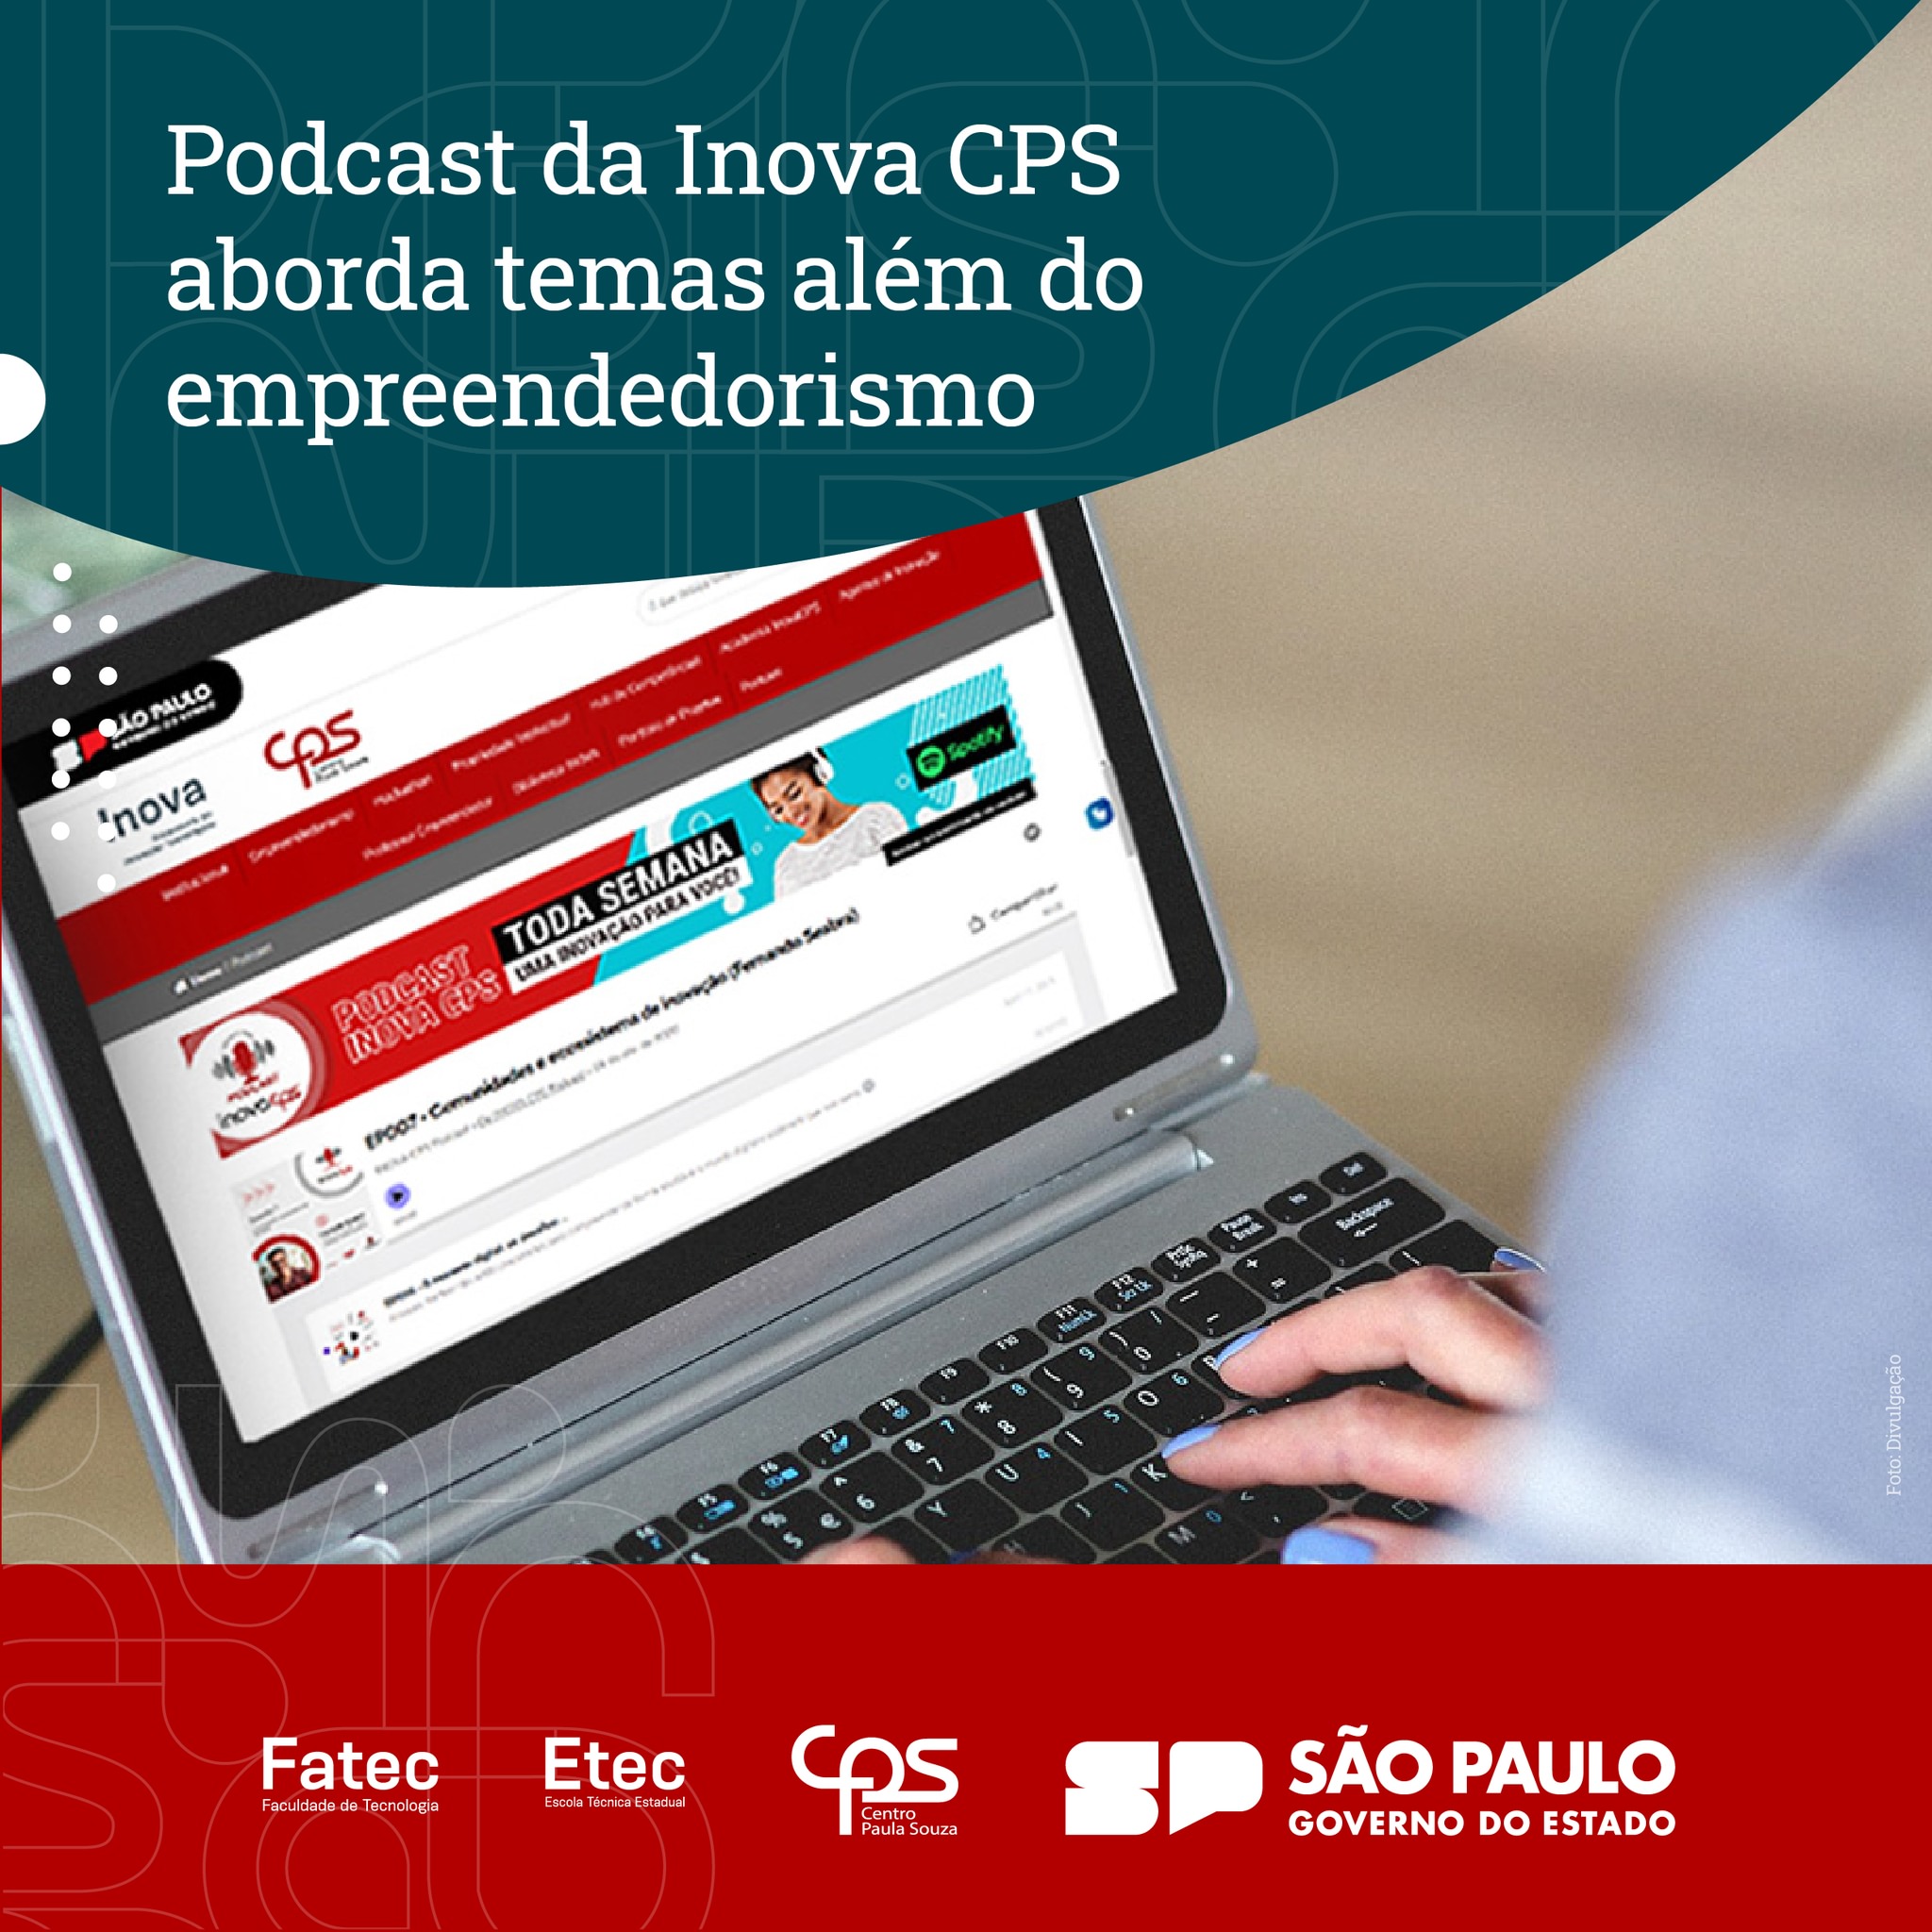 Podcast da Inova CPS aborda temas além do empreendedorismo